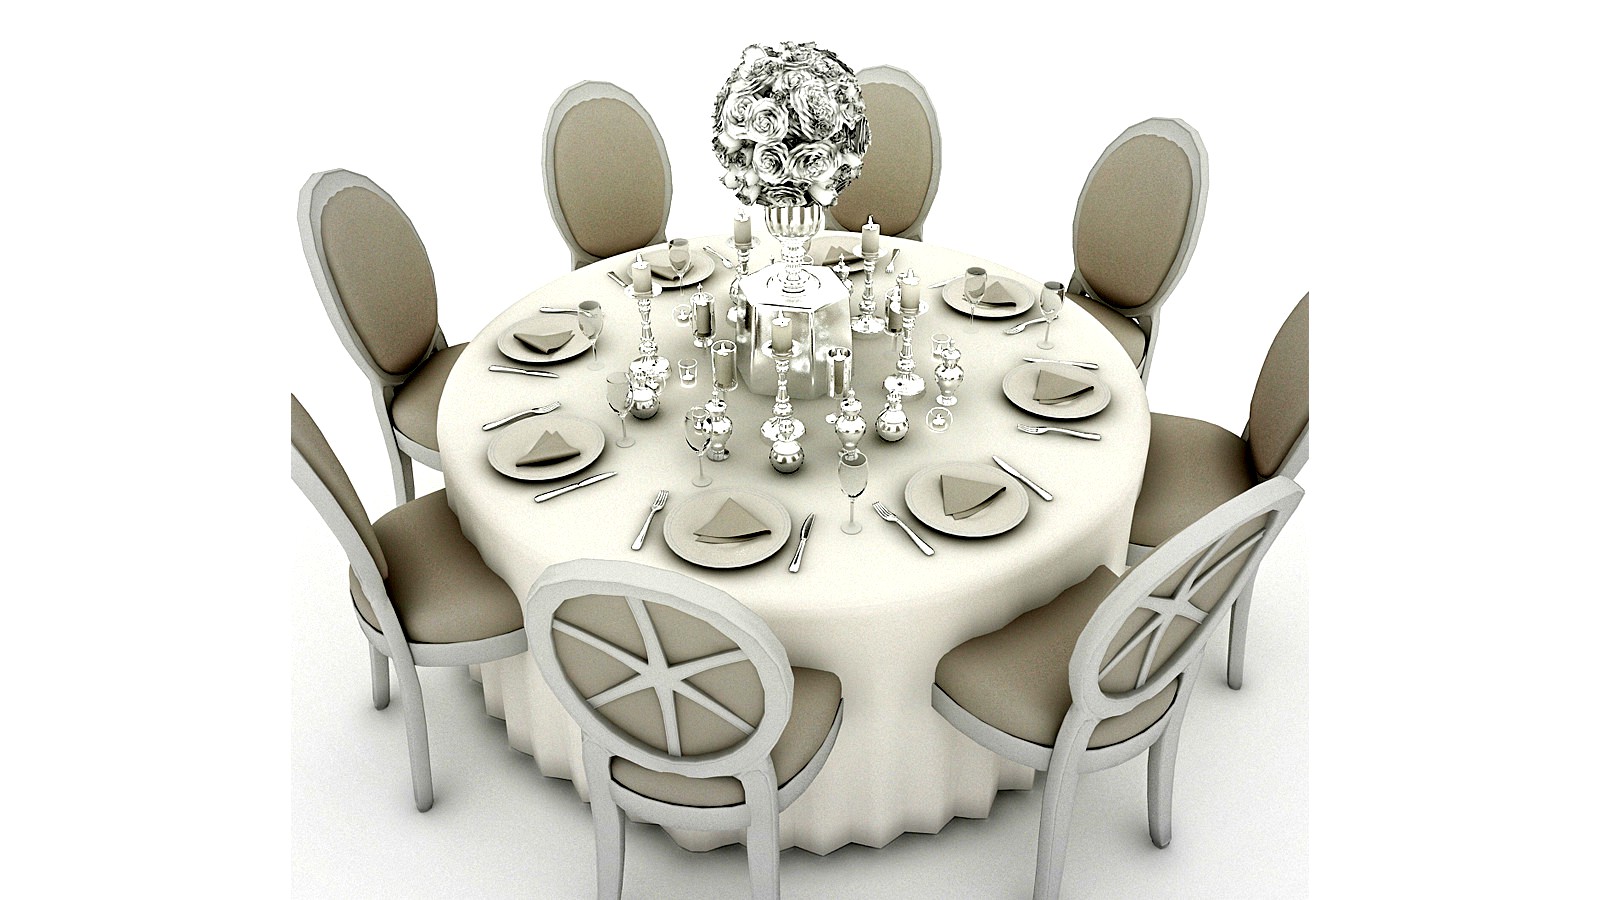 White Wedding Table